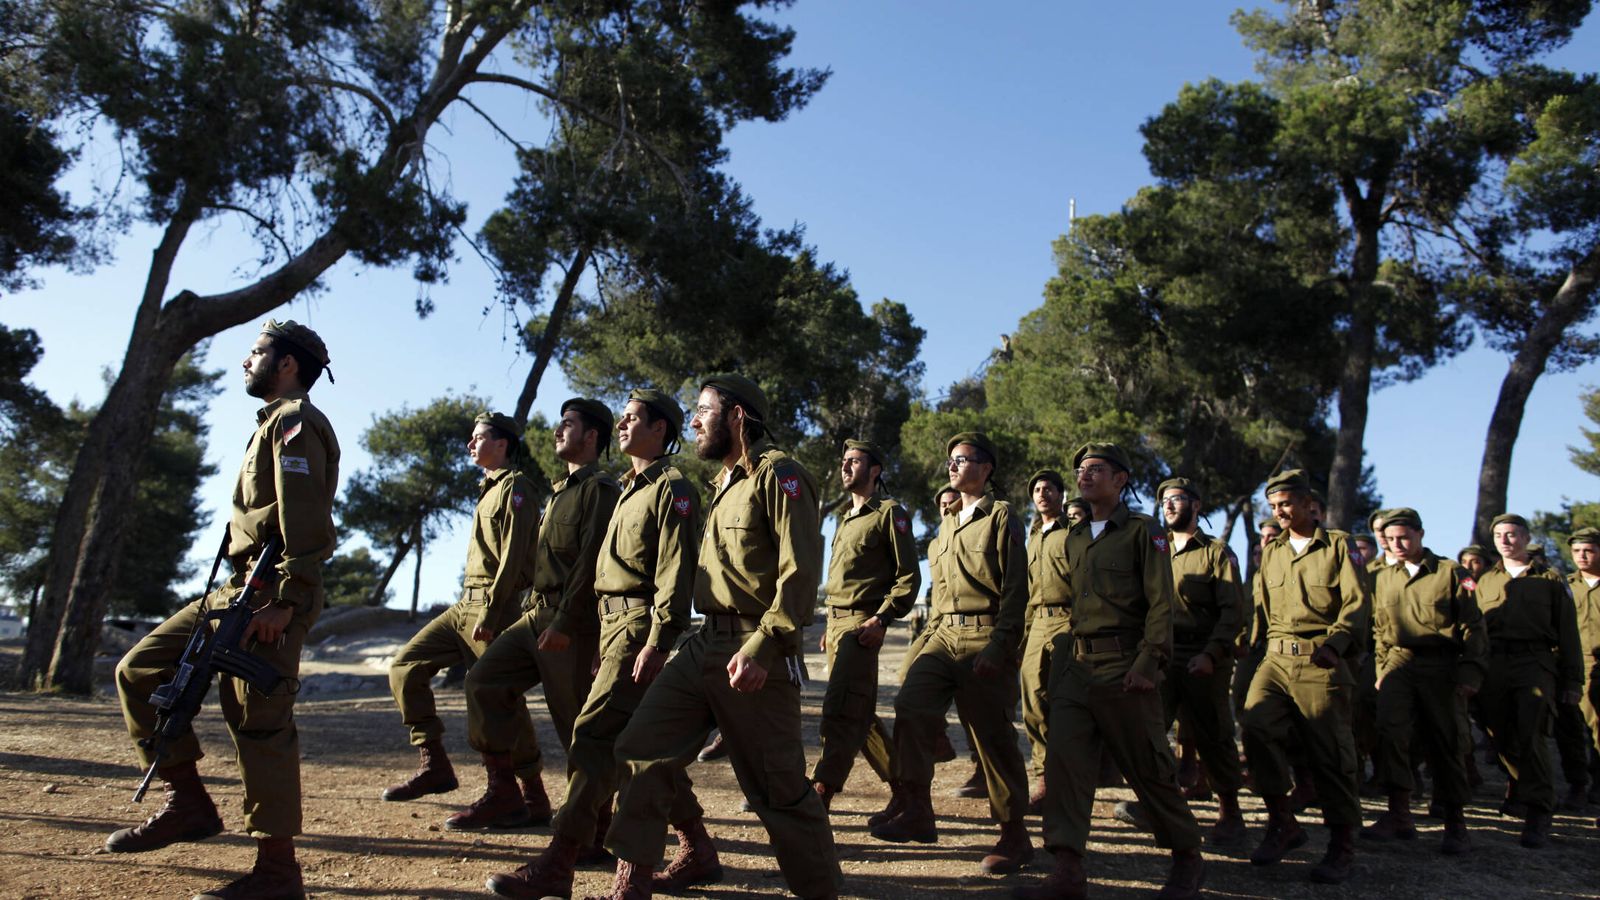 Voluntarios israelíes ultraortodoxos del batallón Netzah Yehuda desfilan mientras se preparan para una ceremonia de graduación militar en Jerusalén. (Getty Images/Lior Mizrahi)